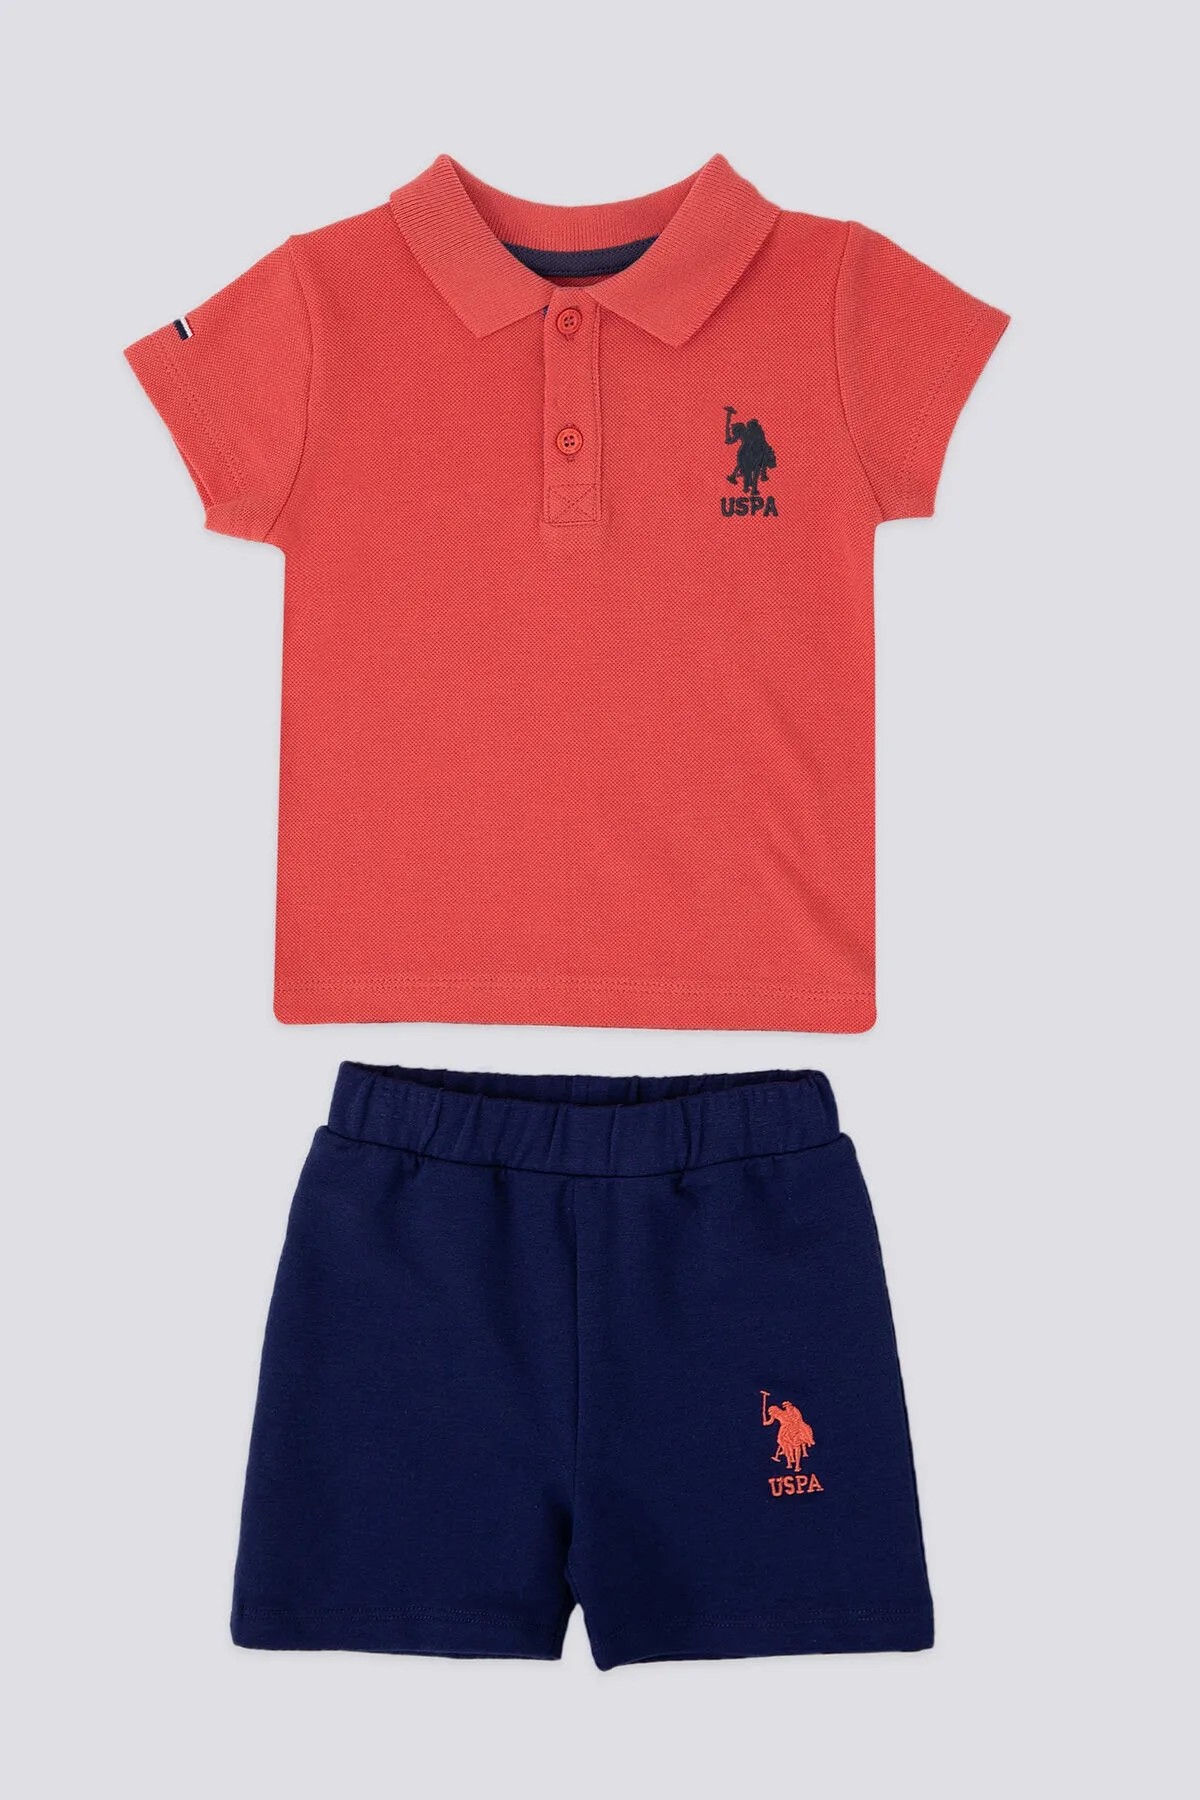 U.S. Polo Assn. Noble Lacivert Bebek Polo Yaka Tshirt Takım - Coral